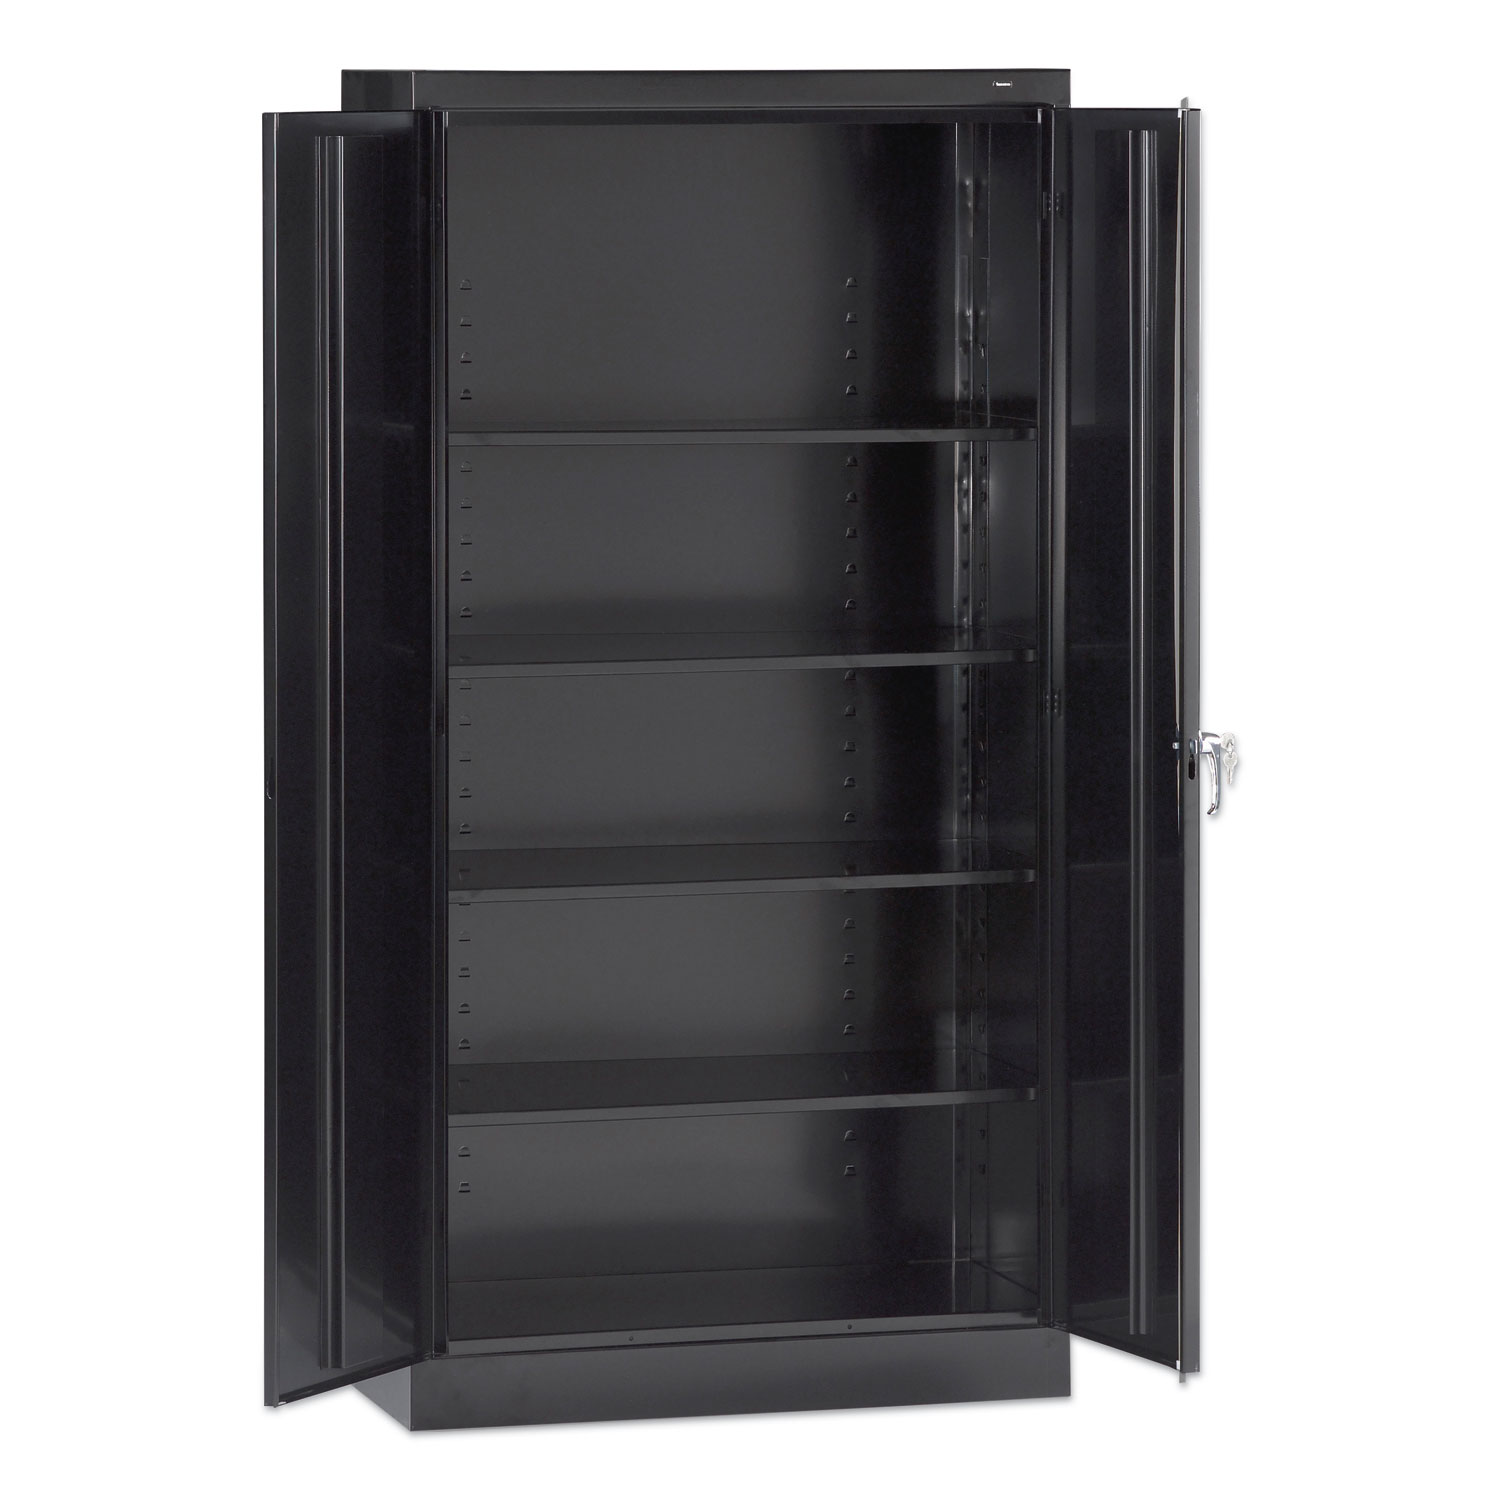  Tennsco 7215-BLK 72 High Standard Cabinet (Assembled), 30 x 15 x 72, Black (TNN7215BLK) 